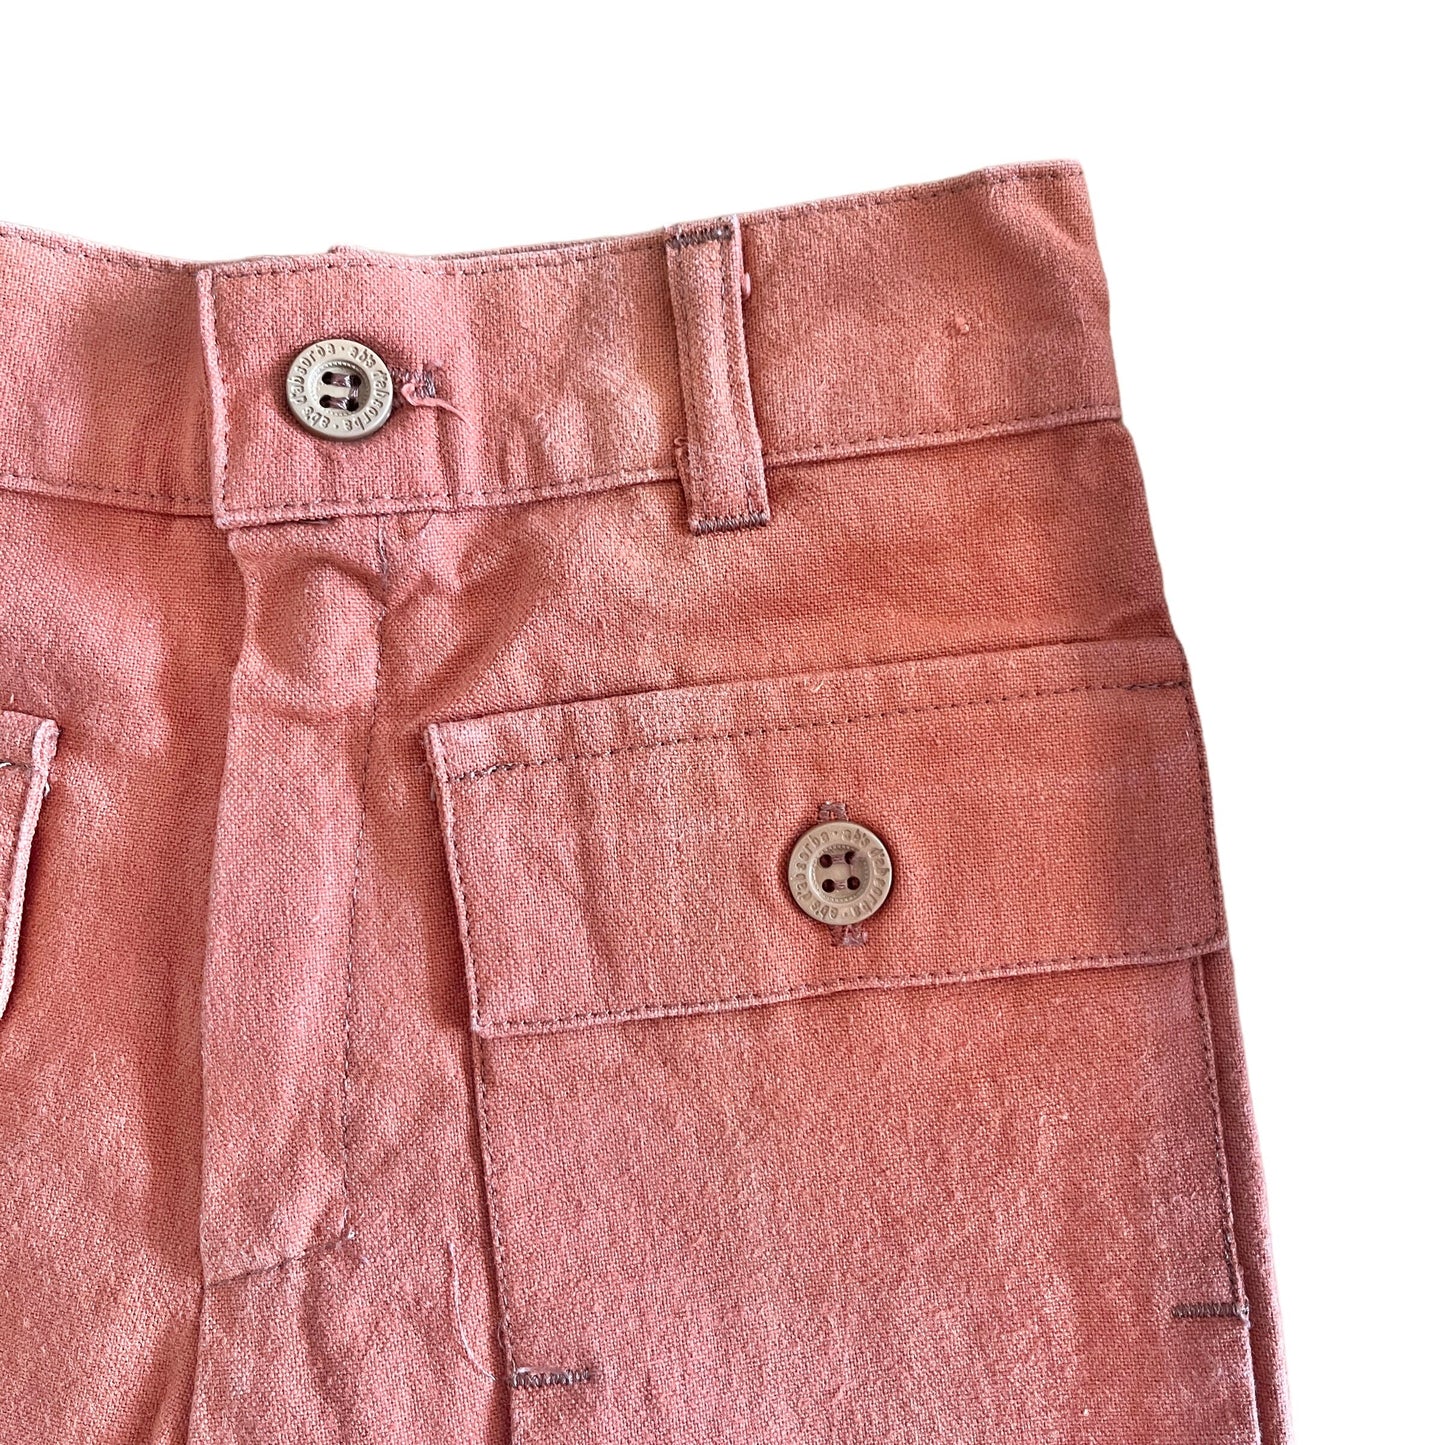 Vintage 1960's Rust Shorts / 3-4Y